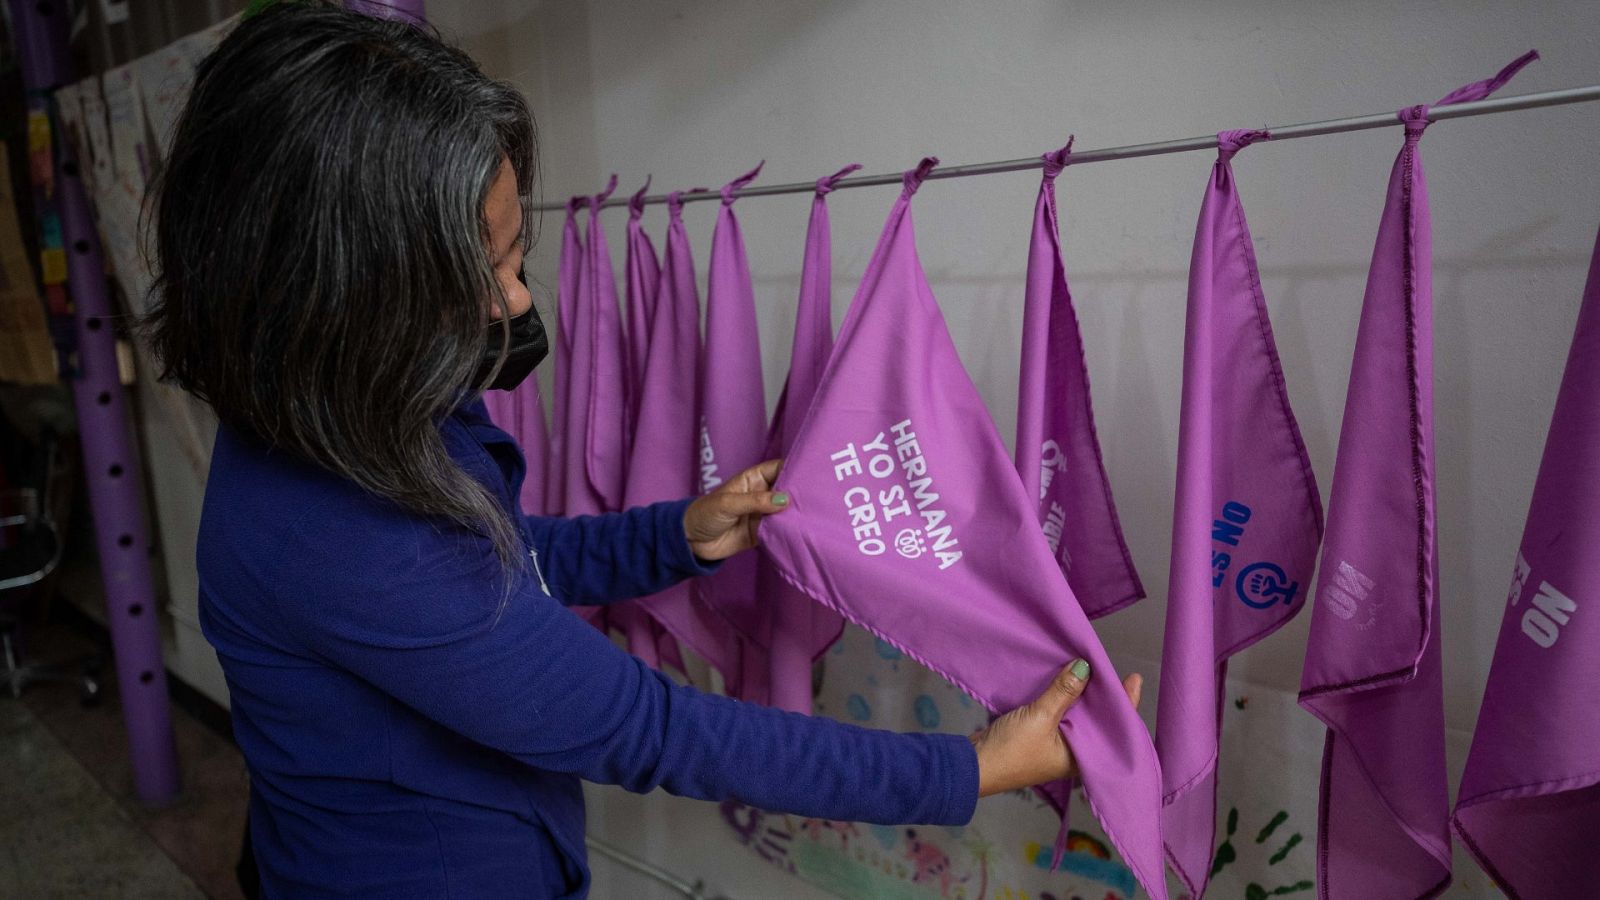 Una integrante del colectivo feminista Tinta Violeta muestra una pañoleta que dice "hermana yo sí te creo",